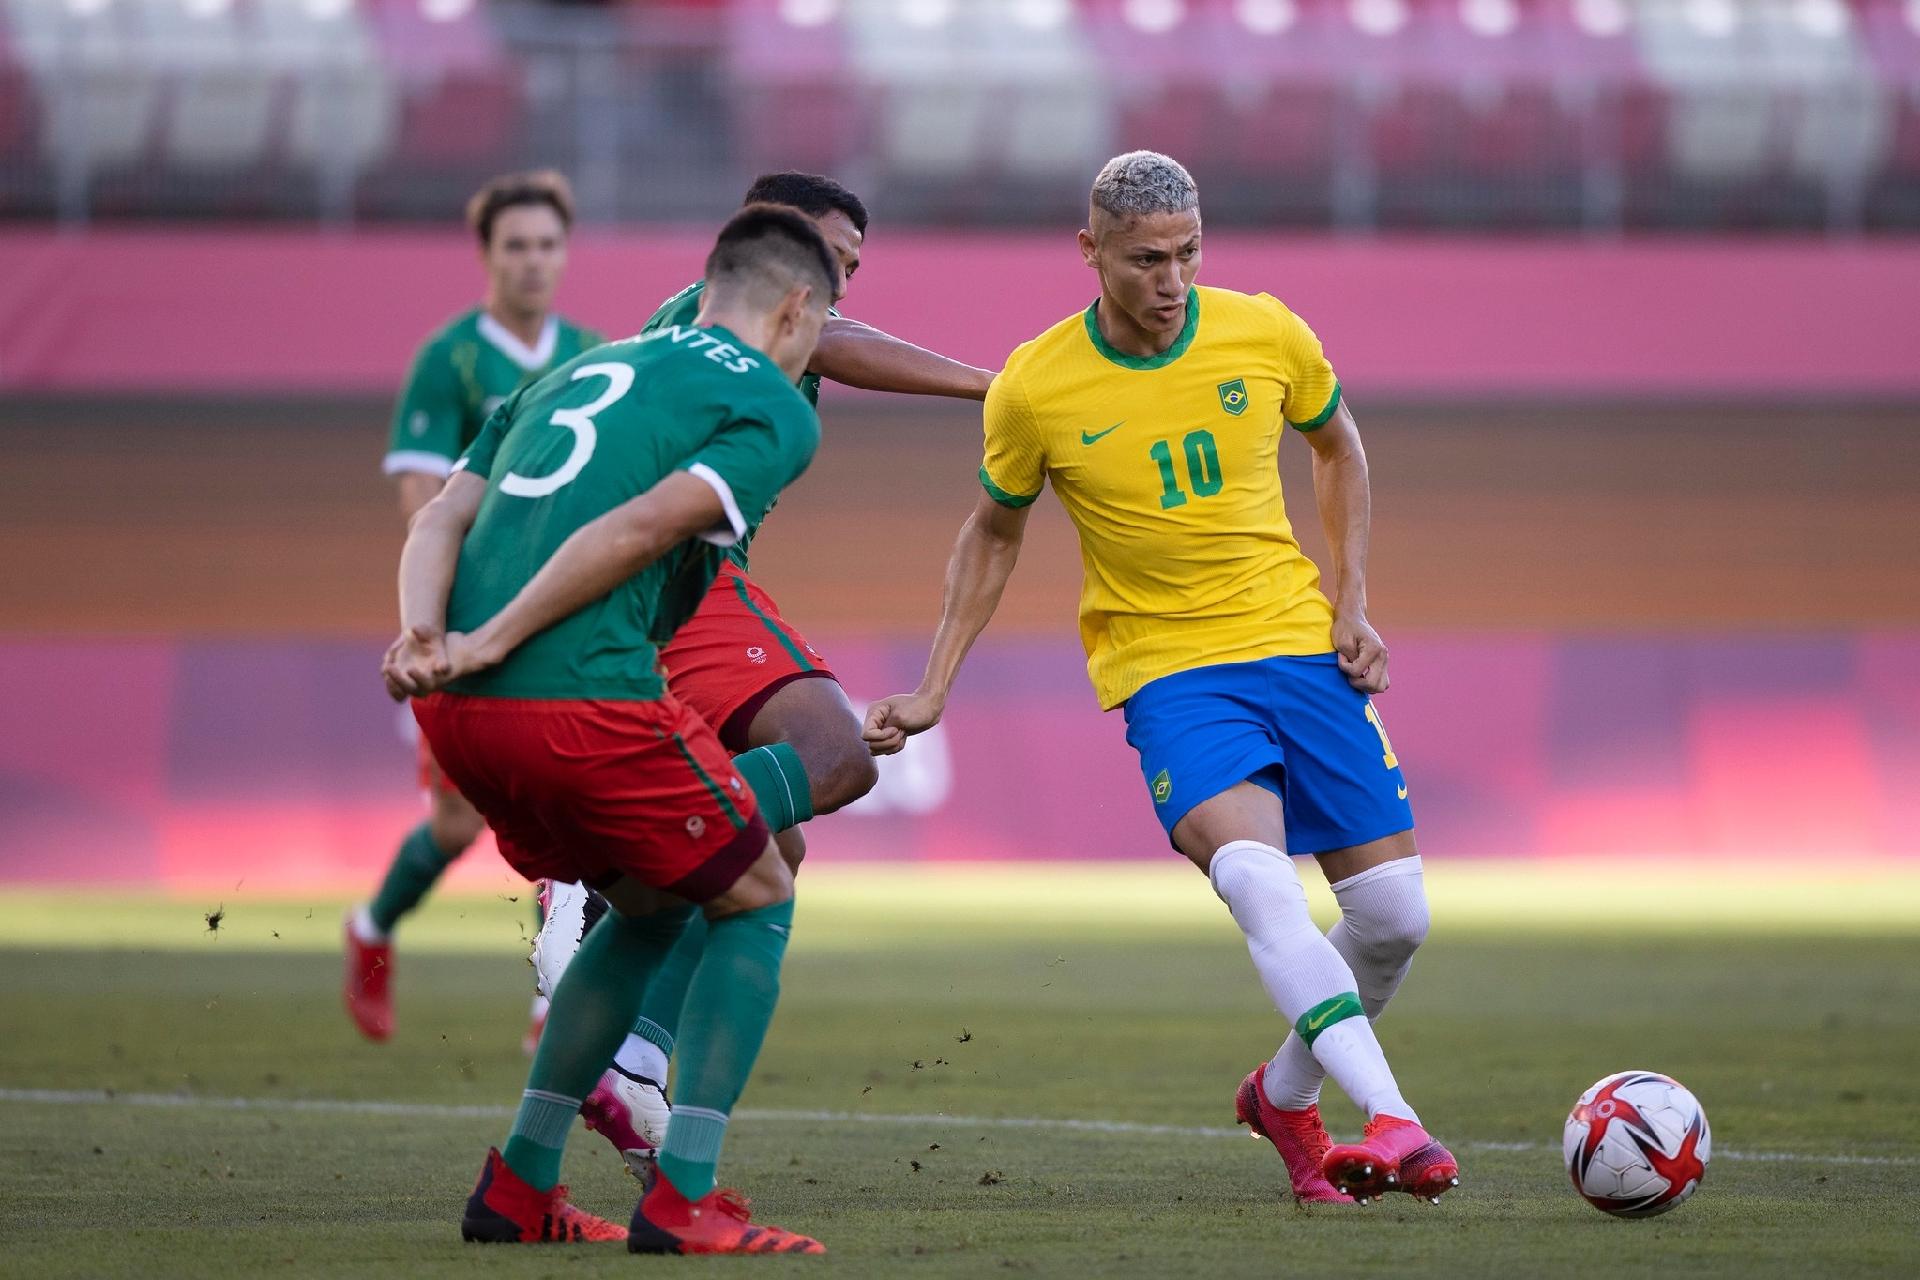 Brasil x Espanha para ficar na memória - Confederação Brasileira de Futebol